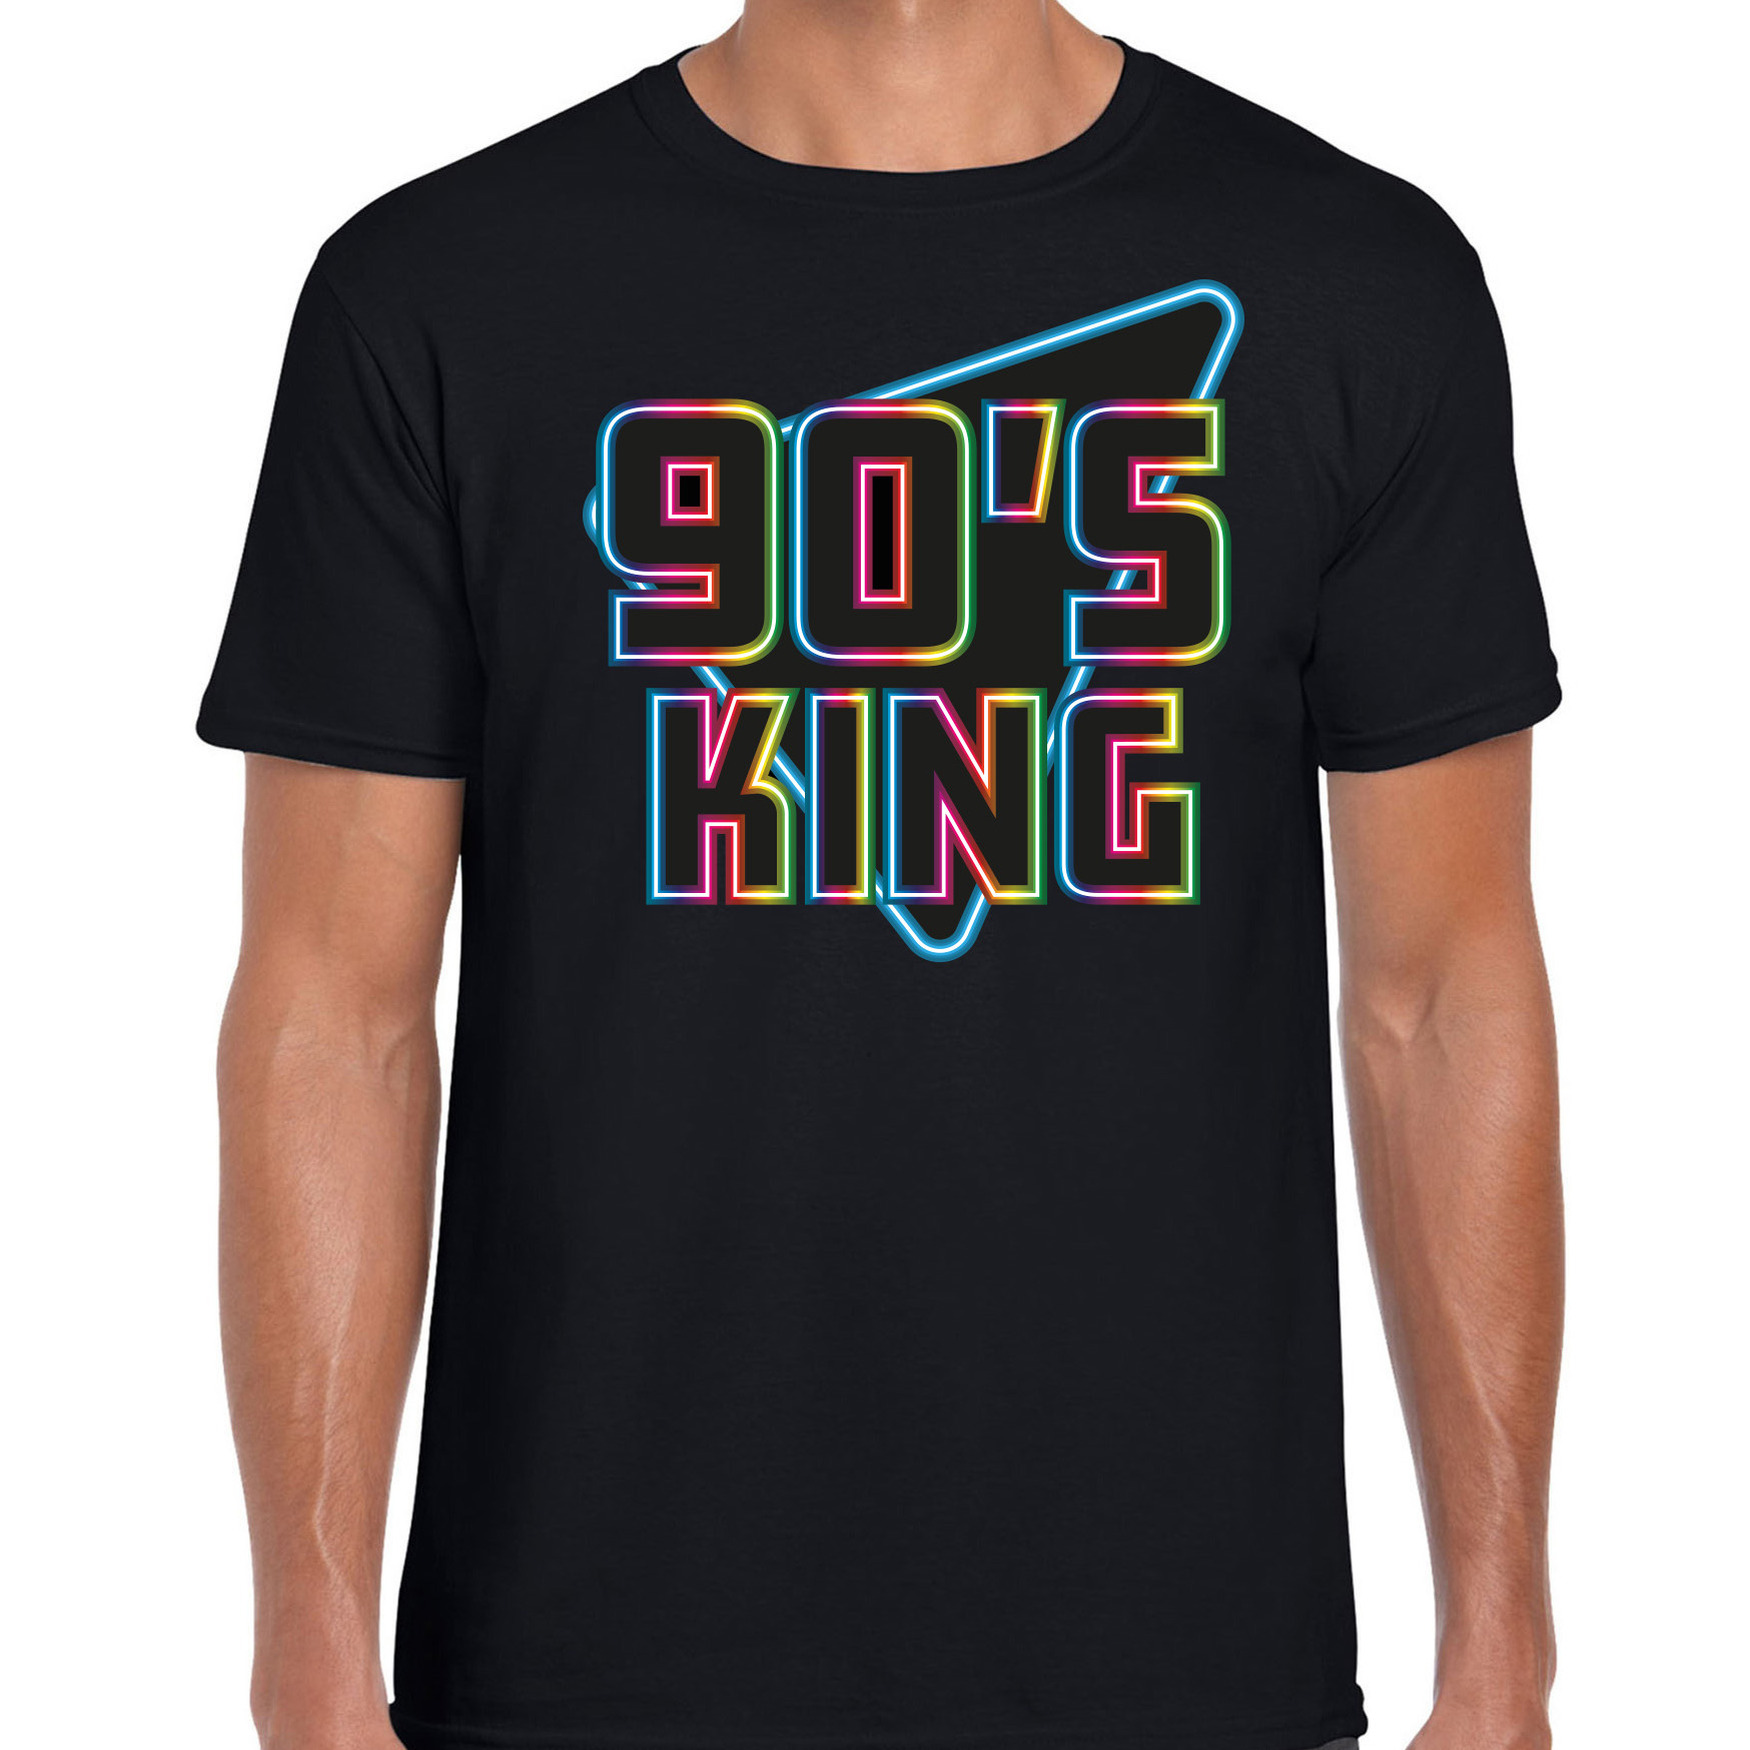 Nineties party verkleed t-shirt heren jaren 90 feest outfit 90s king zwart